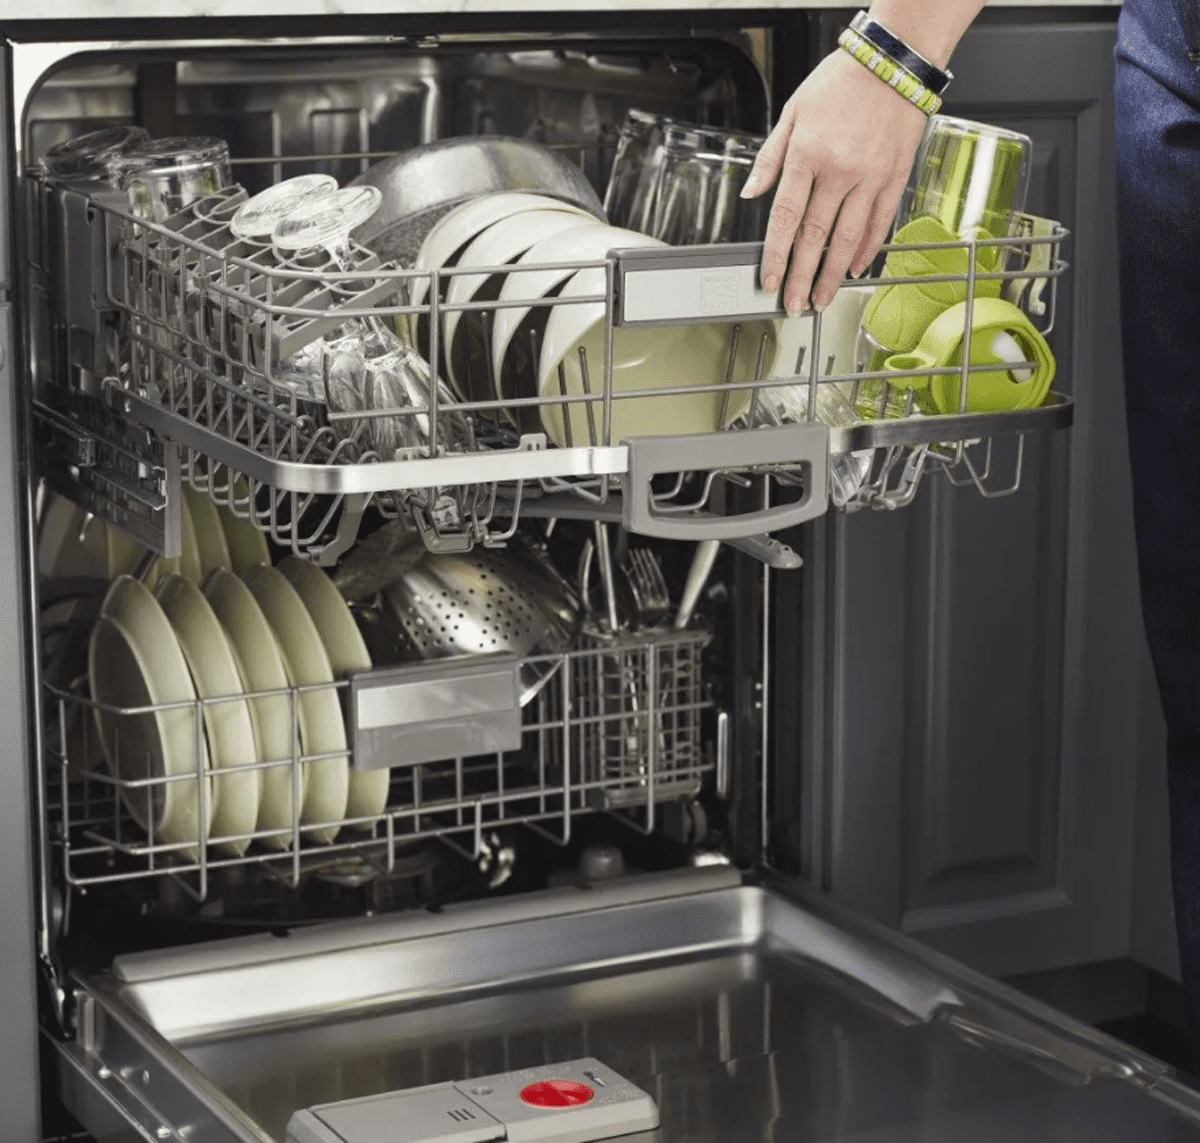 Сборка посудомоечной машины. Для посудомоечных машин. Посудомойка загрузка посуды. Правильная загрузка посуды в посудомоечную машину. Посудомоечная машина внутри.